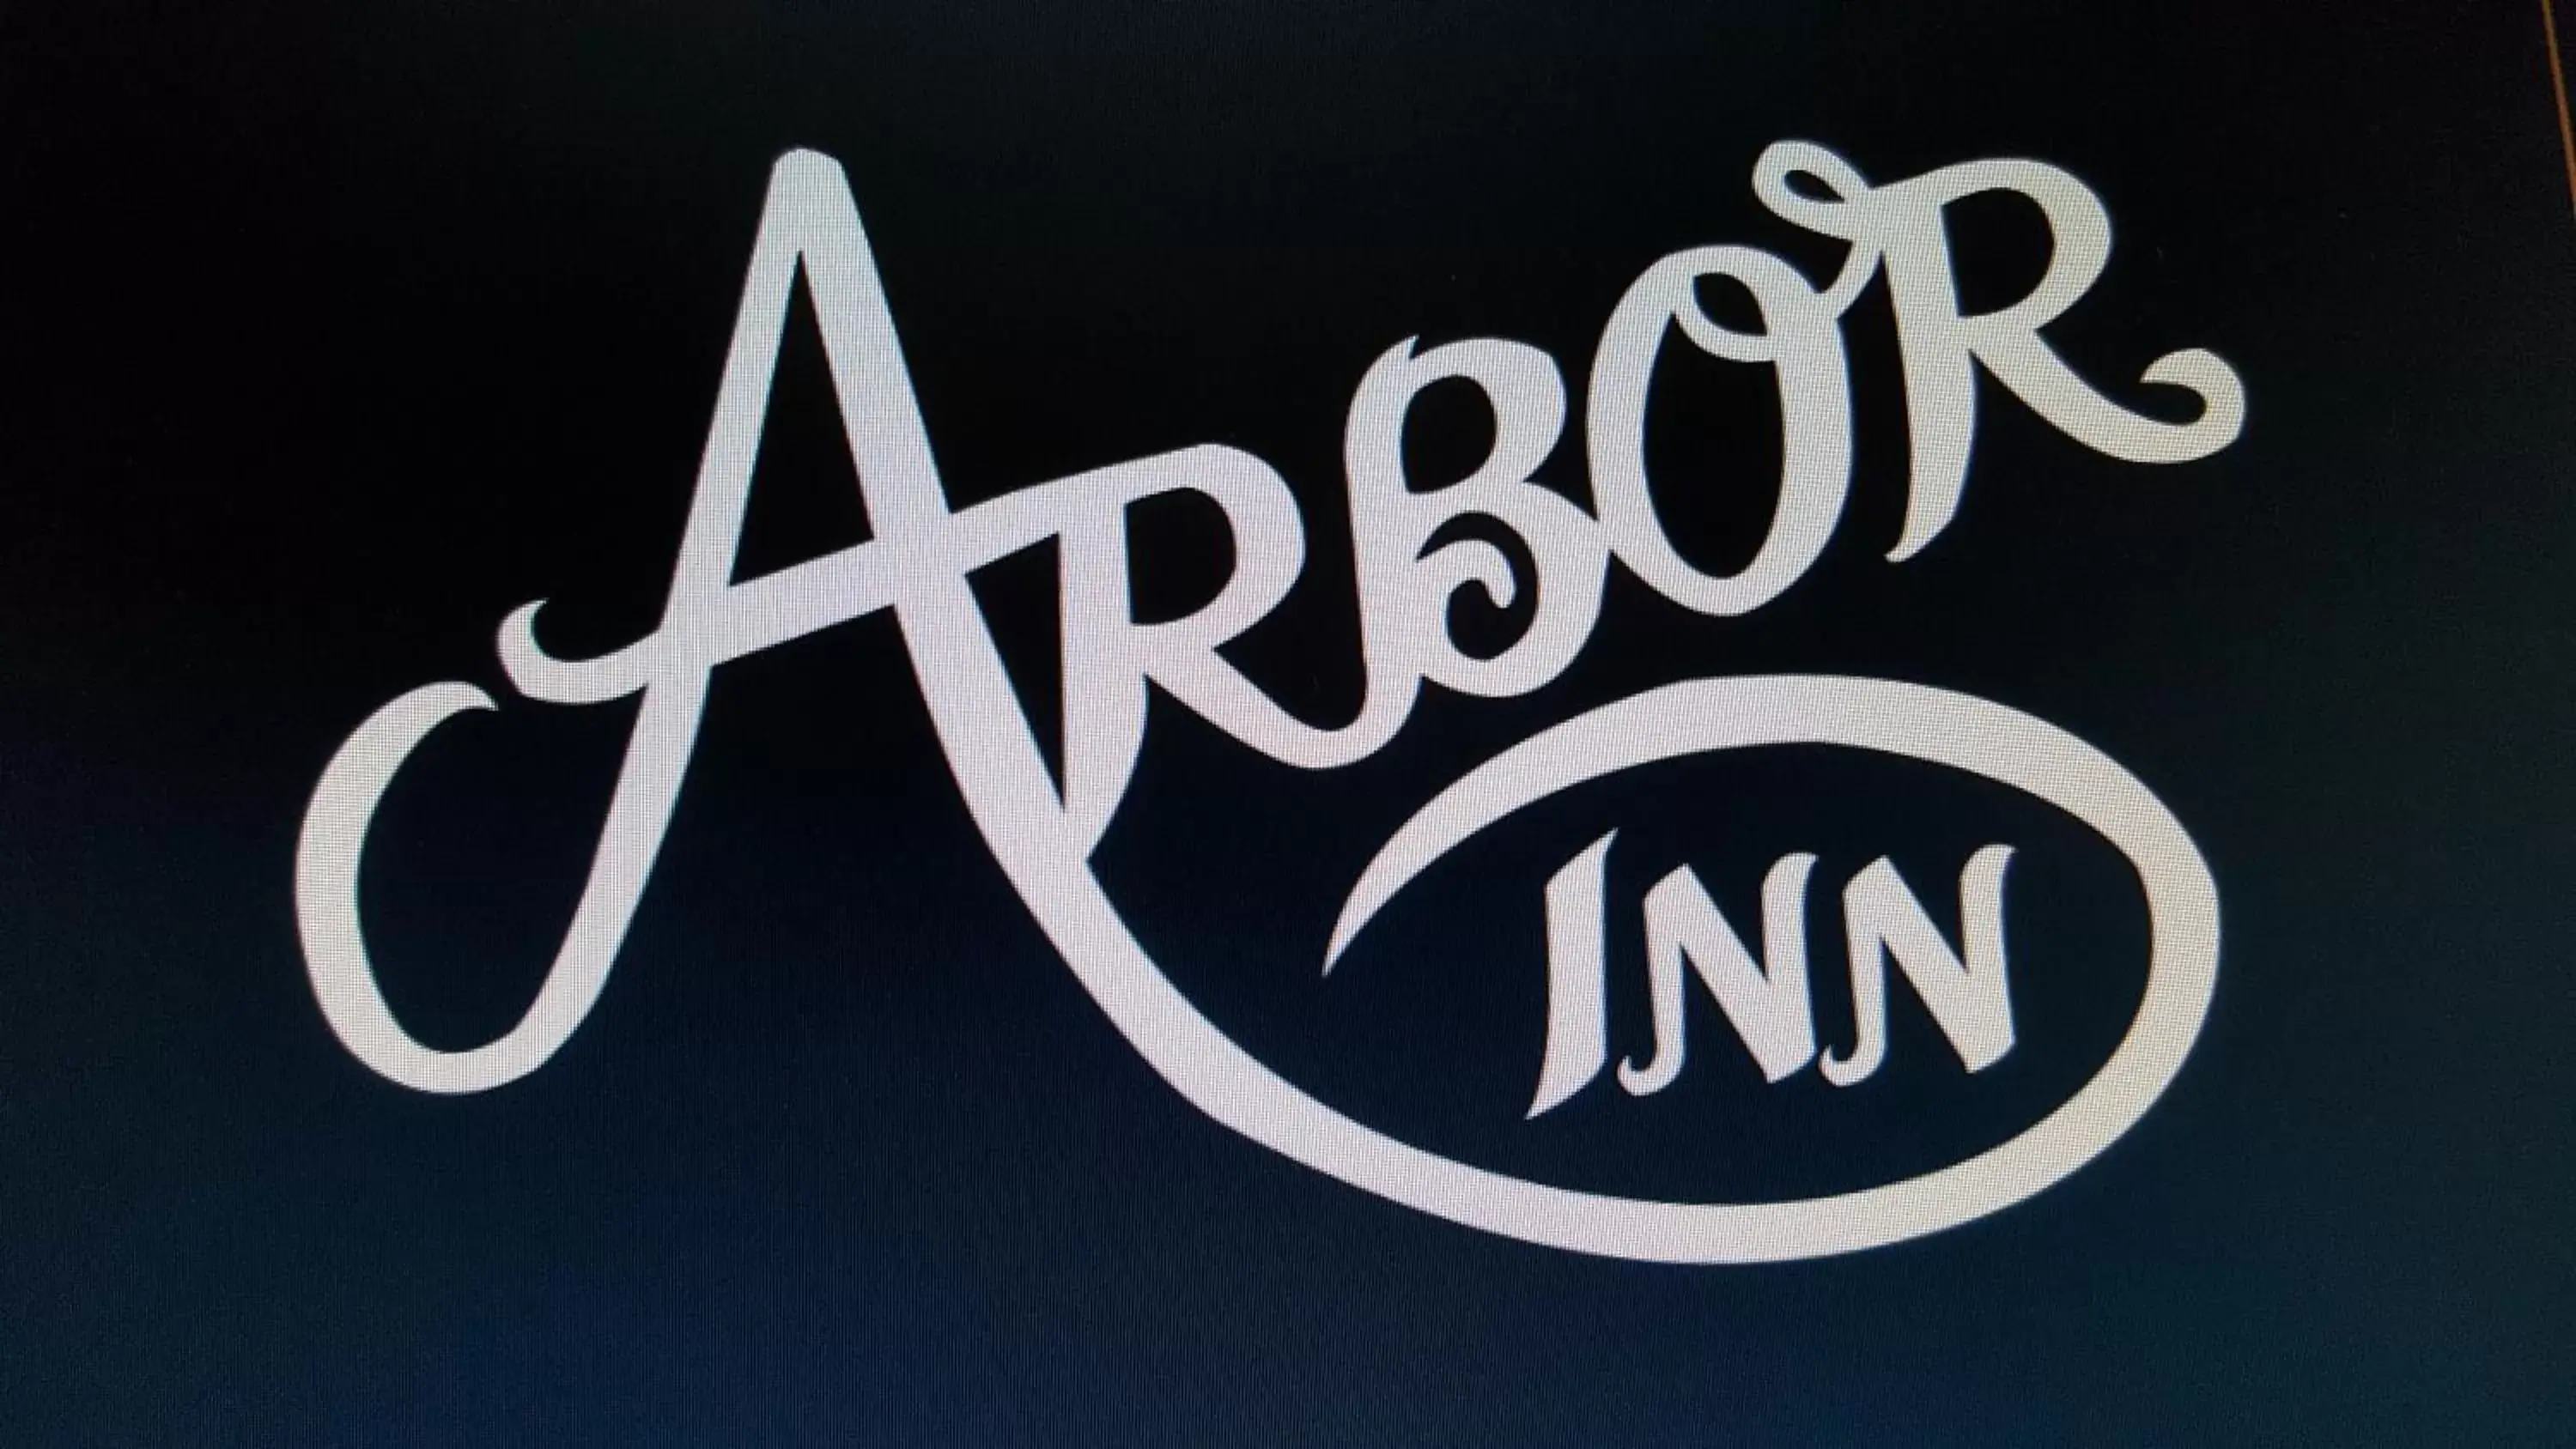 Logo/Certificate/Sign in Arbor Inn Monterey